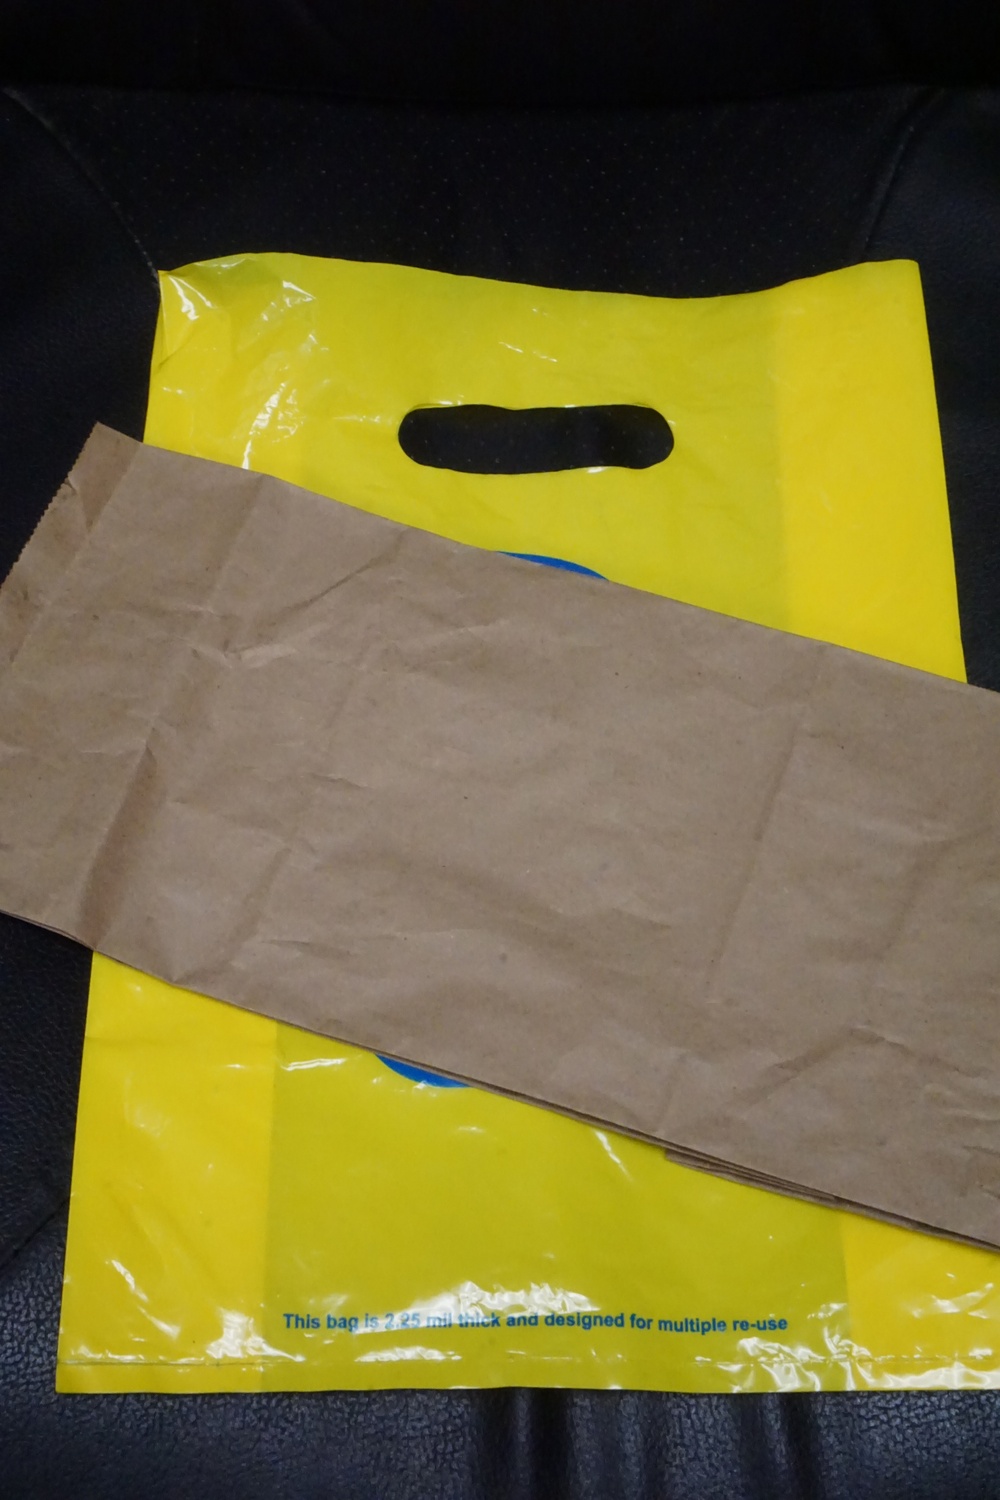 In the bag: Oahu begins plastic bag ban in July